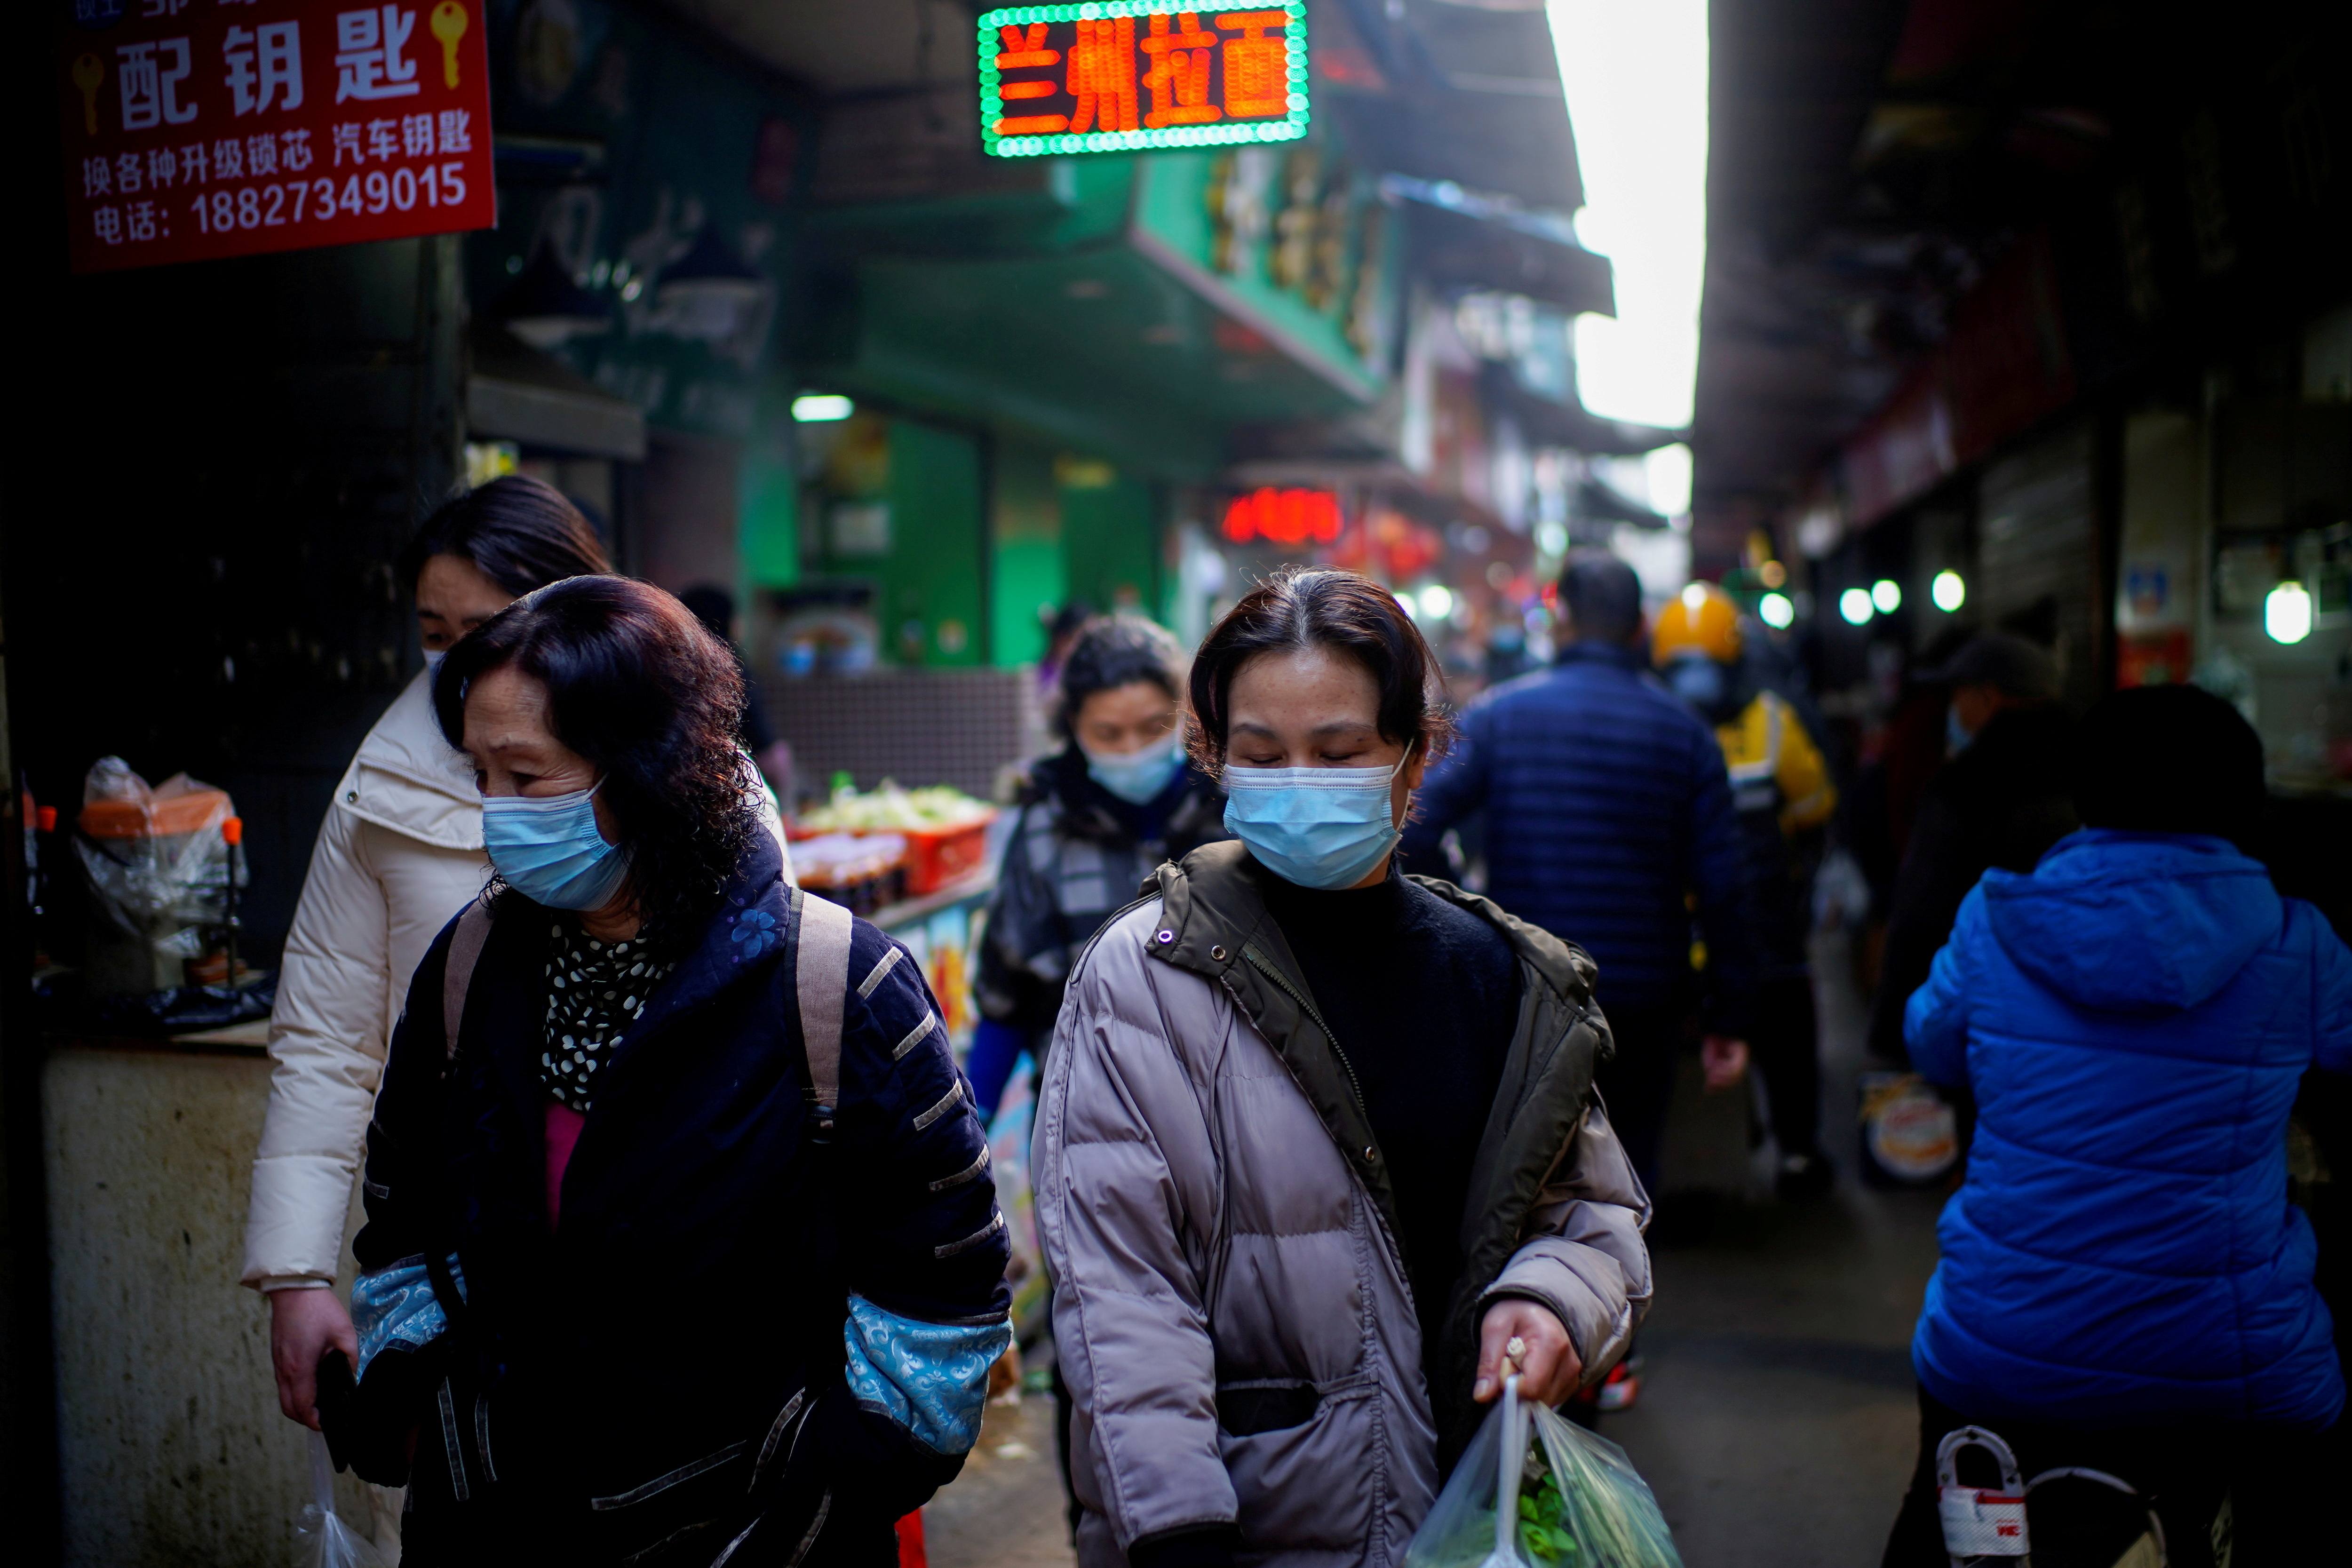 FOTO DE ARCHIVO: Personas con mascarillas caminan en un mercado callejero, tras un brote de la enfermedad del coronavirus (COVID-19) en Wuhan, provincia de Hubei, China 8 de febrero de 2021. REUTERS/Aly Song